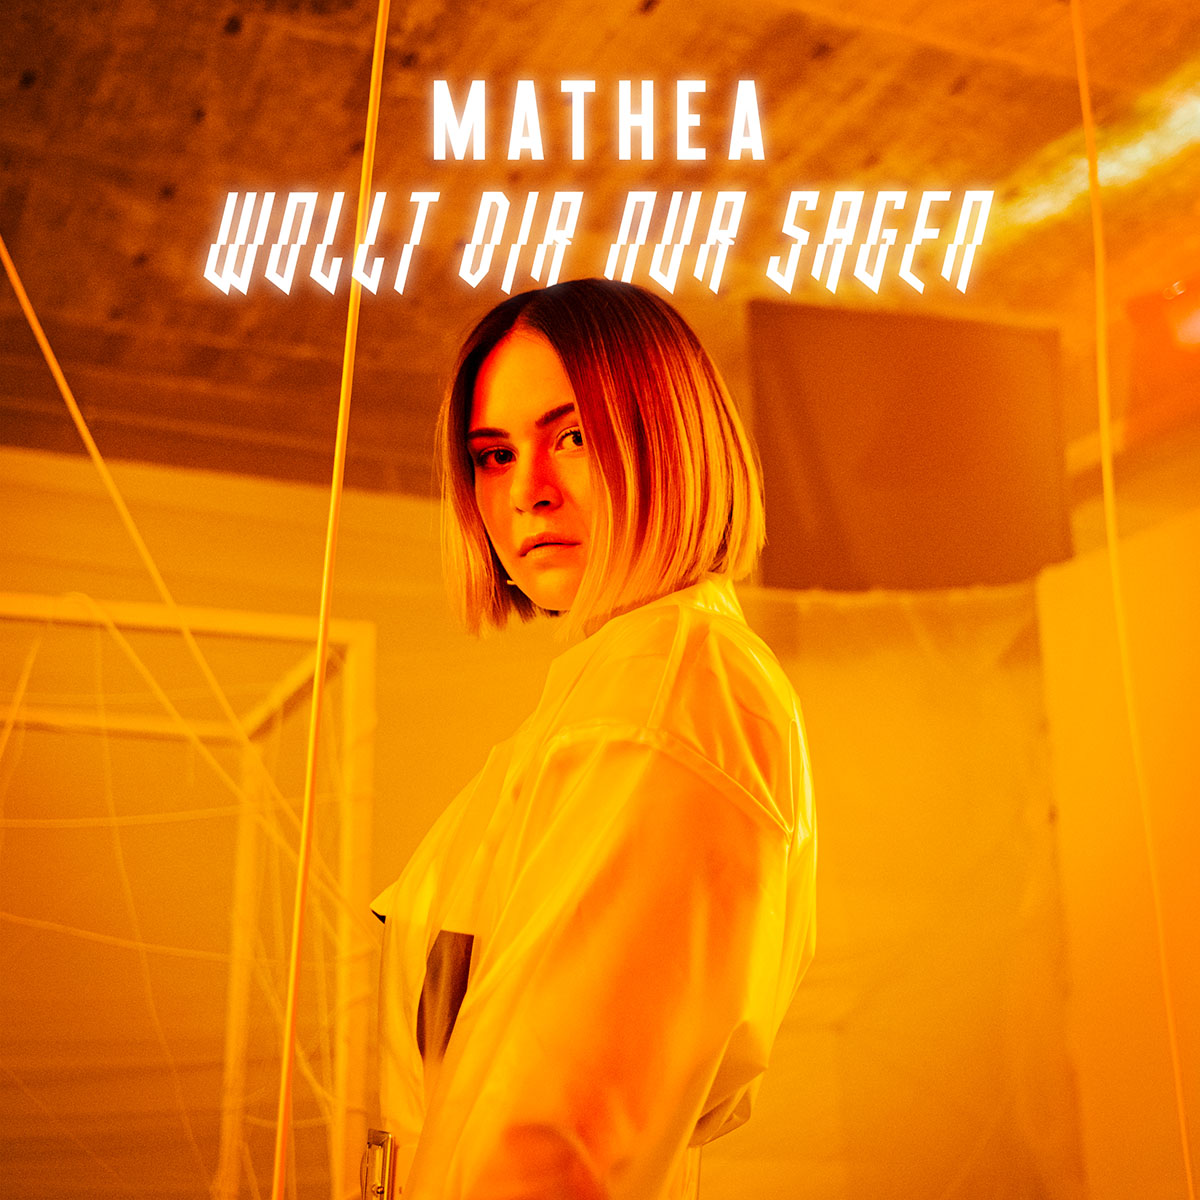 Mathea — Wollt dir nur sagen cover artwork